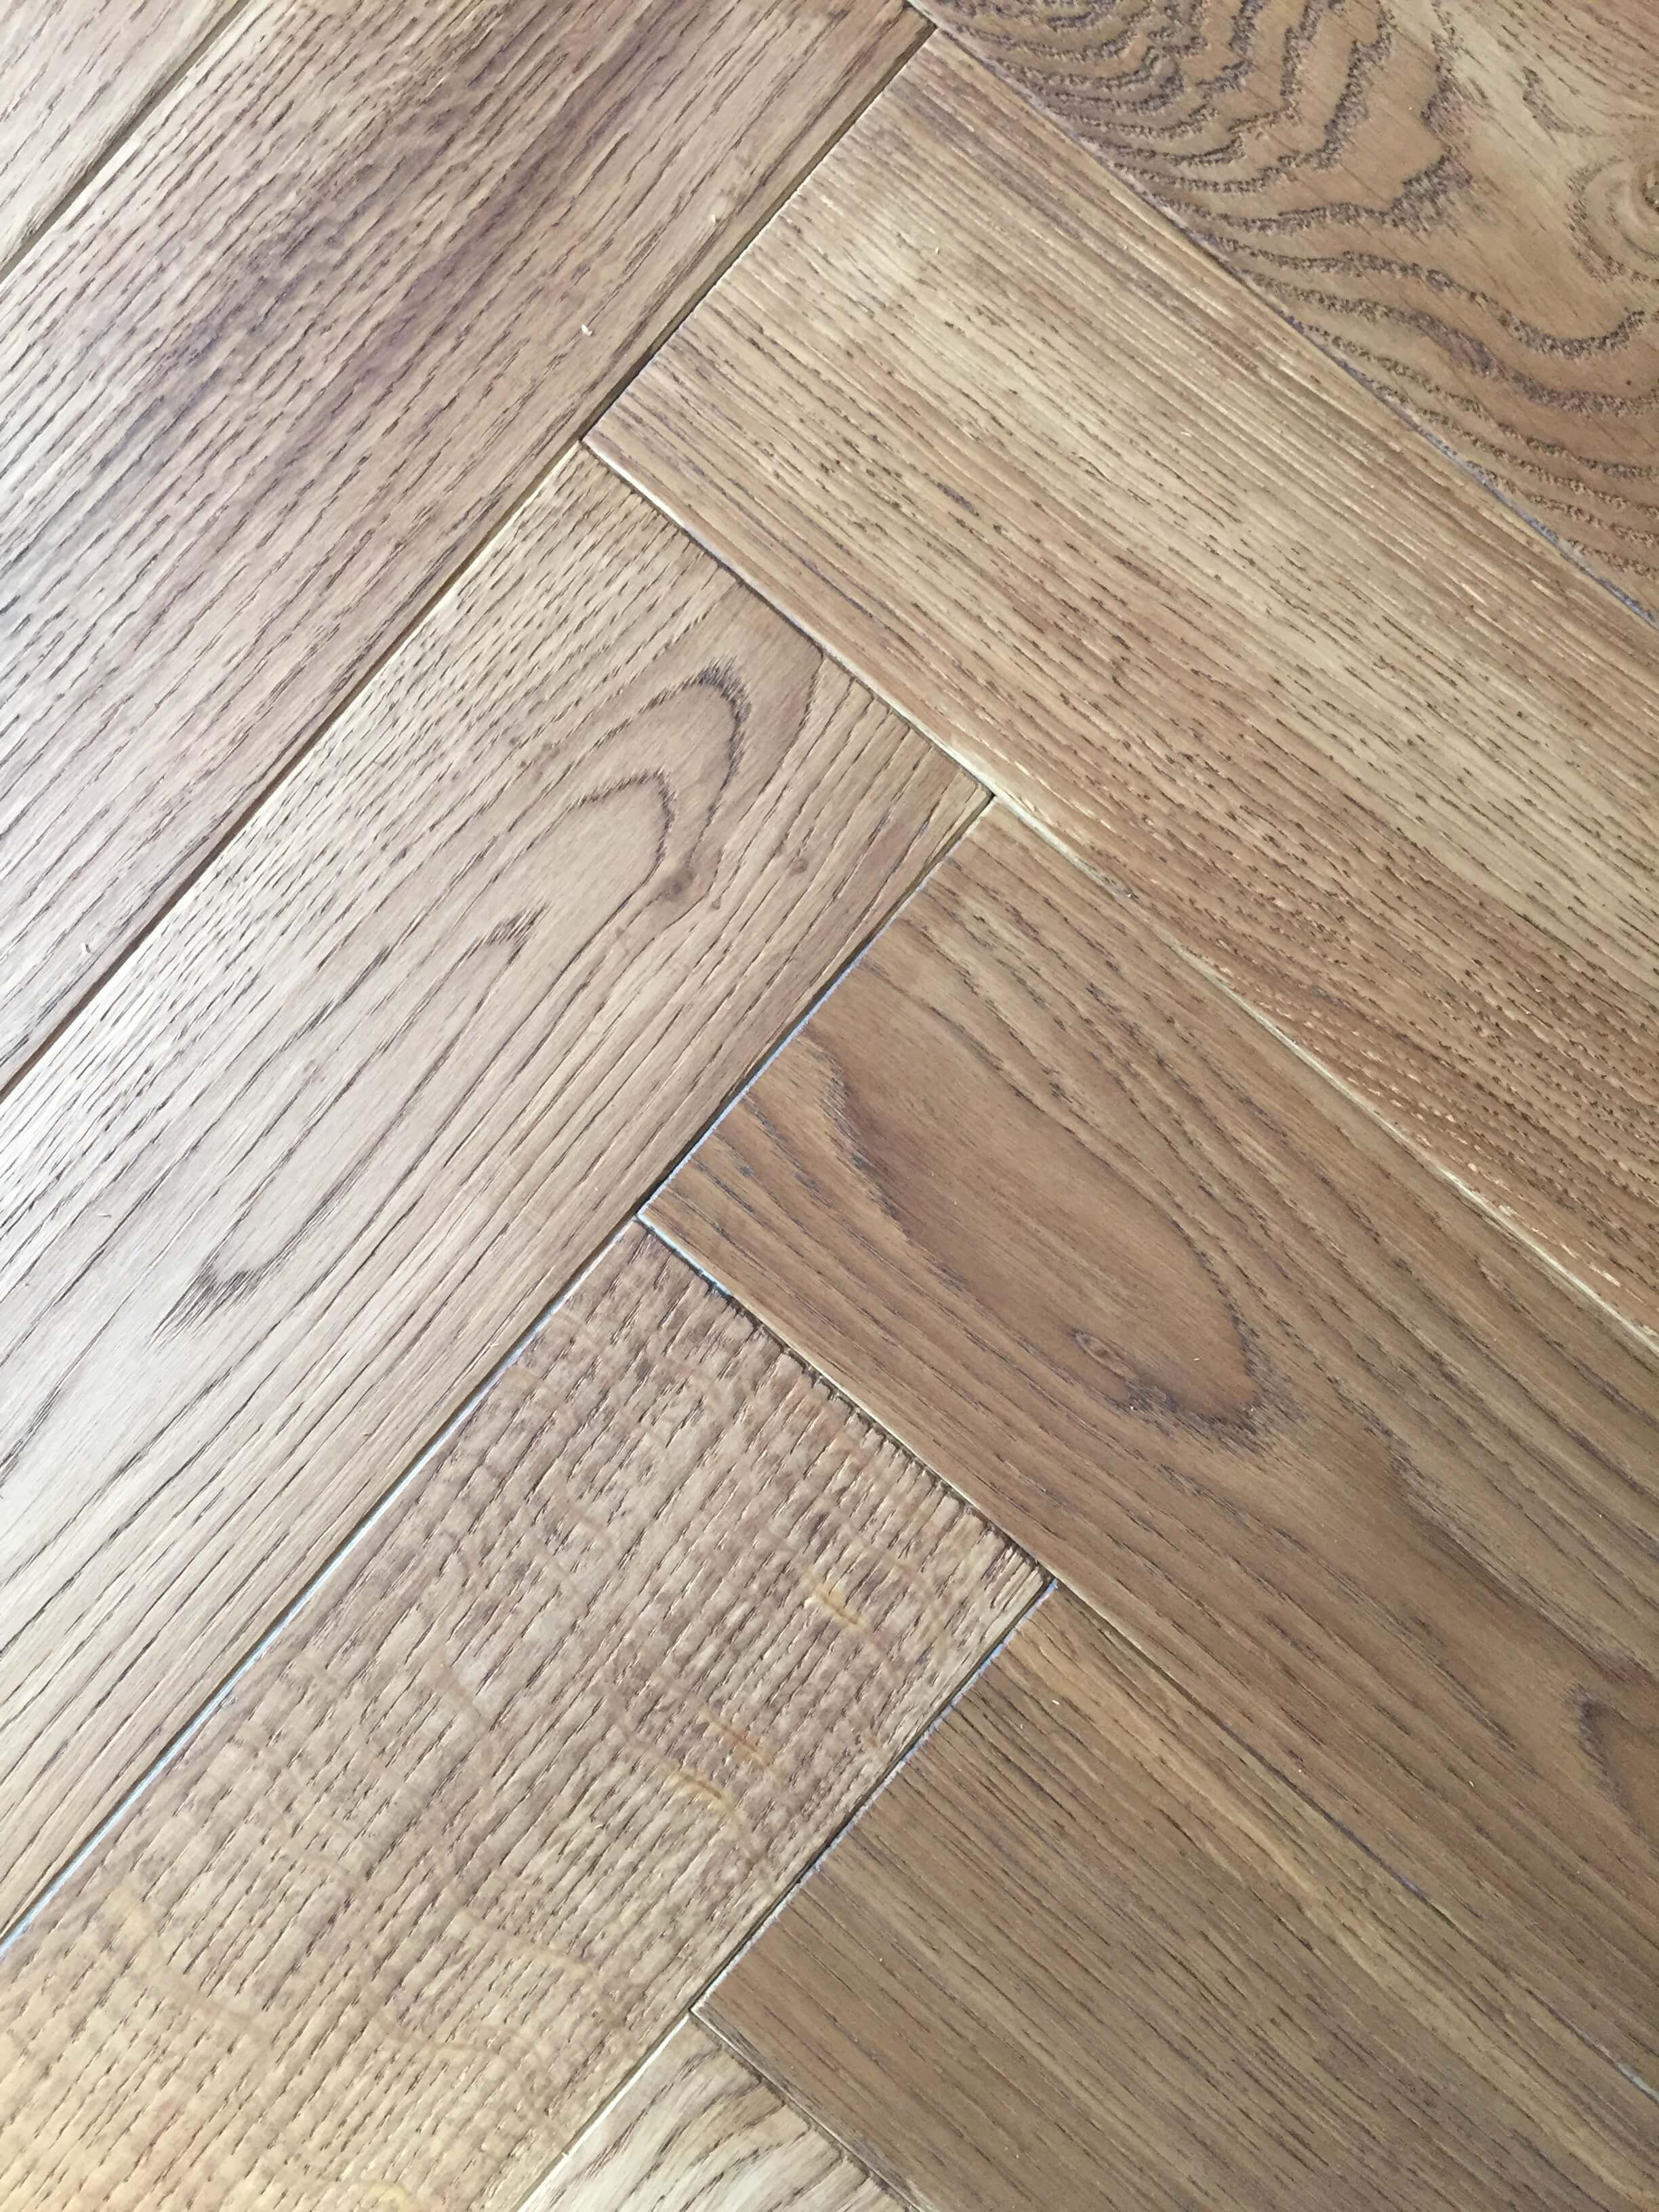 26 Recommended Dark Vs Light Hardwood Floors 2024 free download dark vs light hardwood floors of light wood tile floors floor plan ideas regarding 40 light oak engineered hardwood flooring ideas